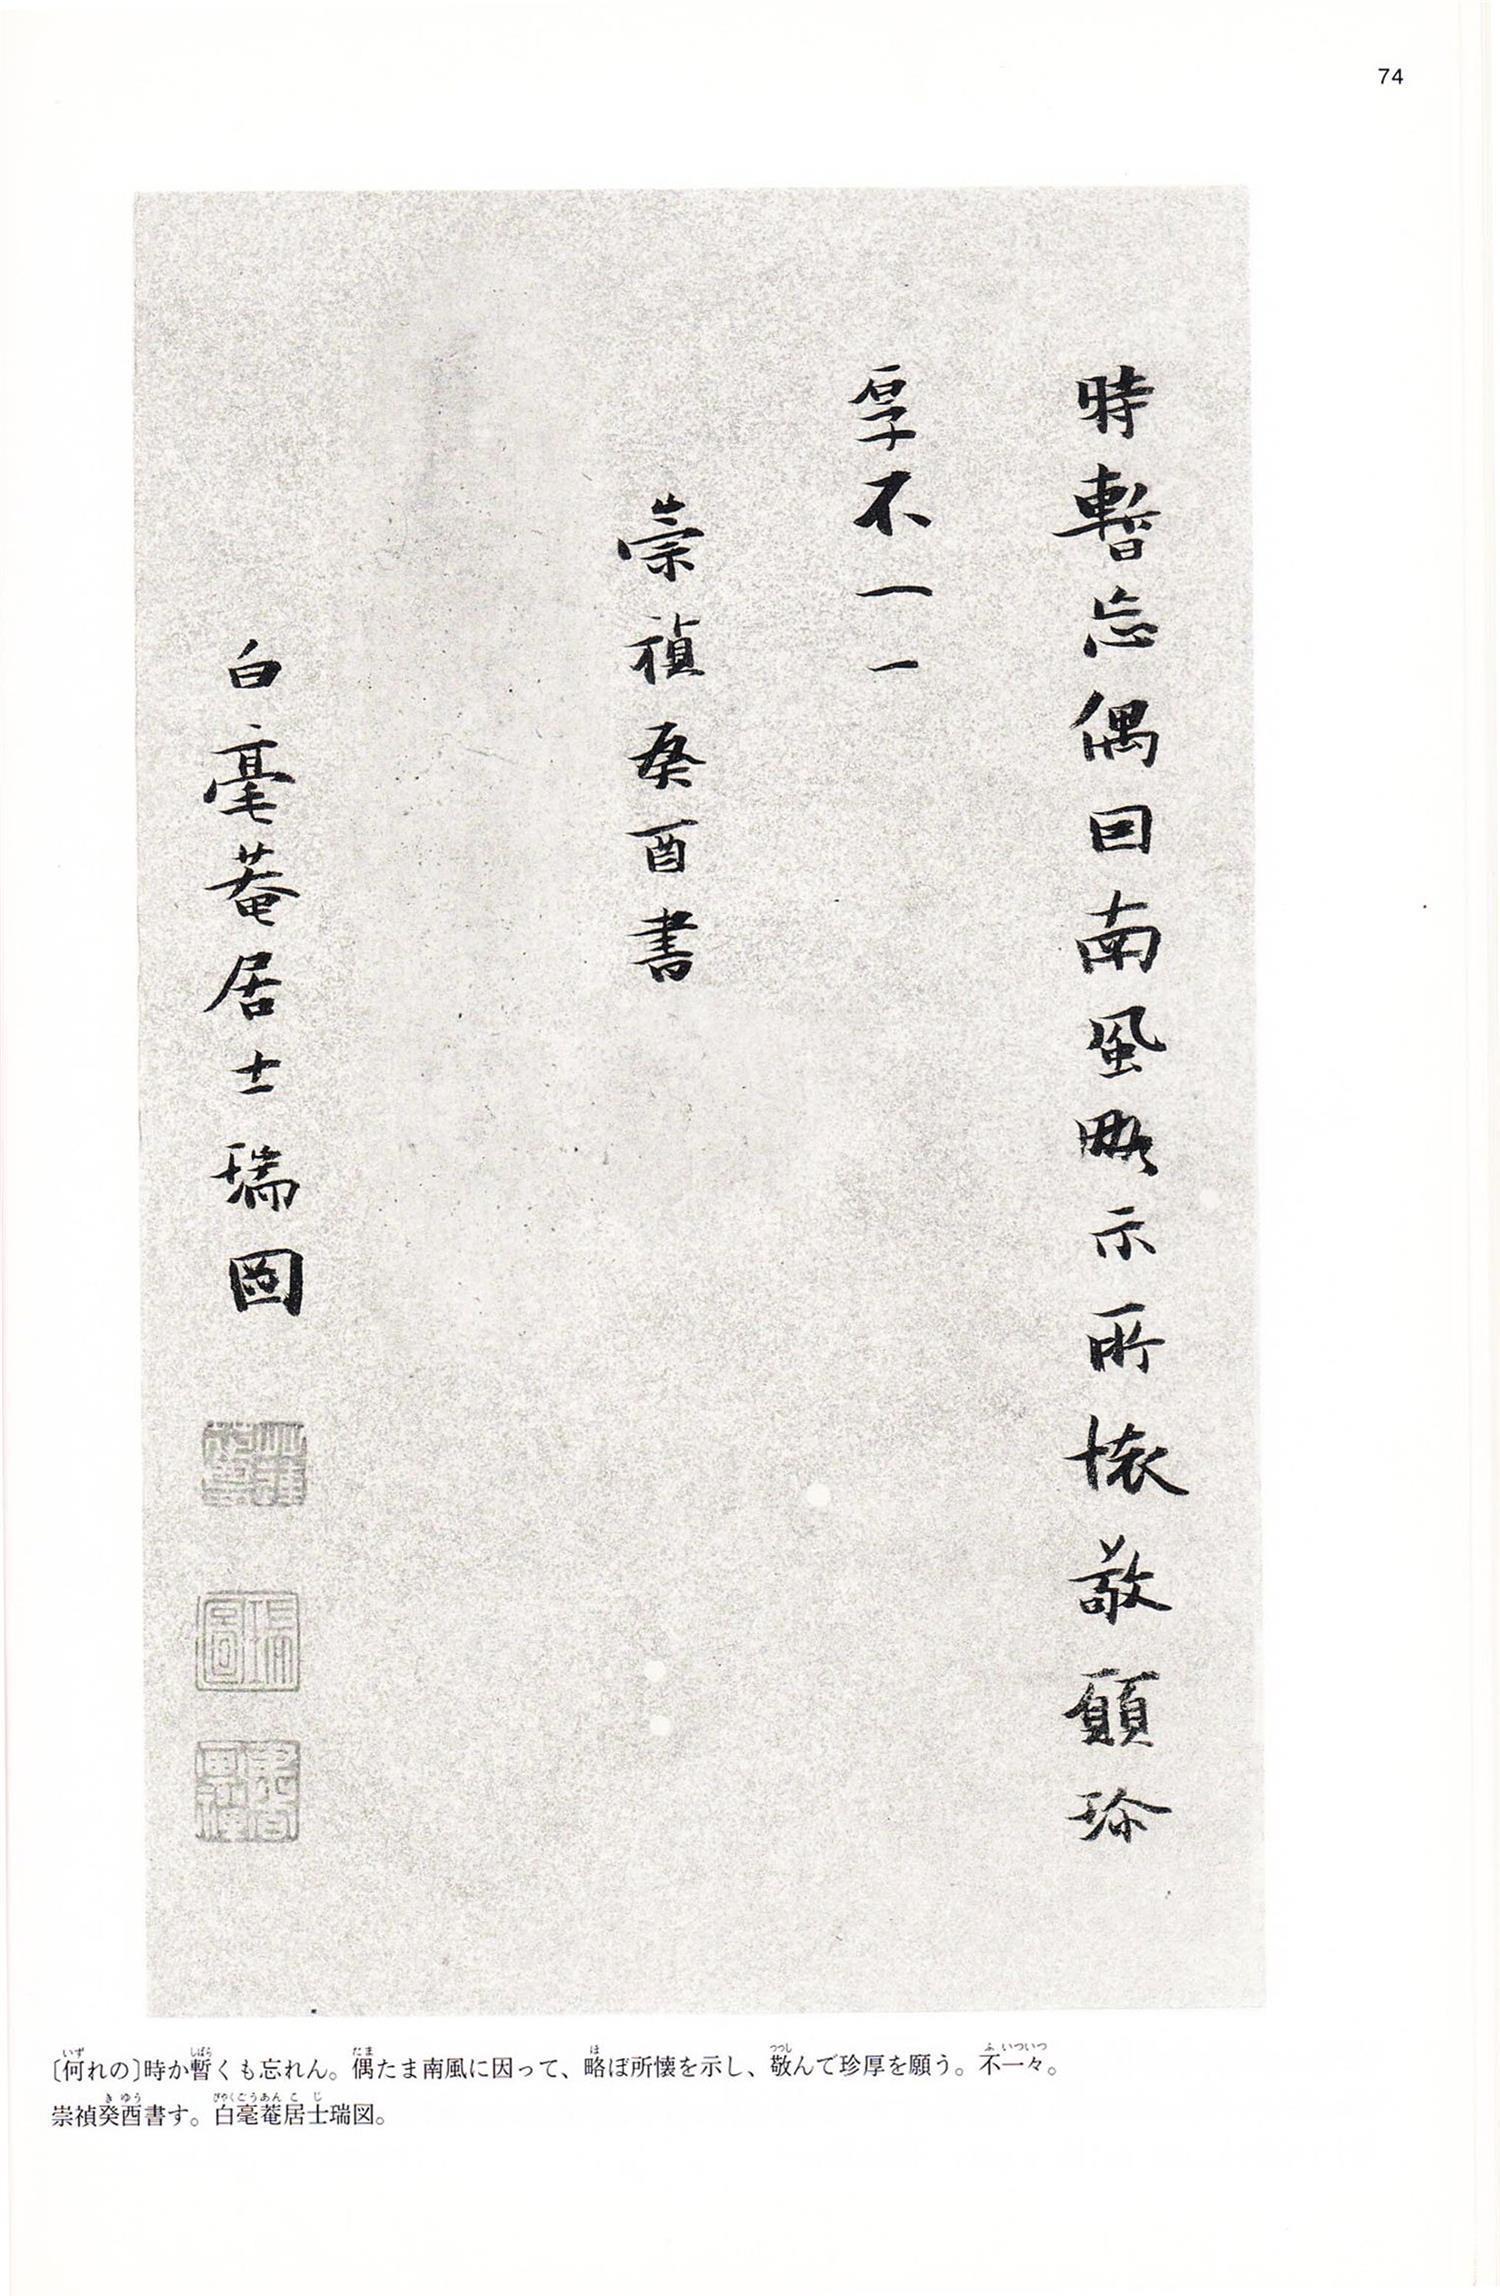 书法-中国法书选 (52)张瑞图集- (73)